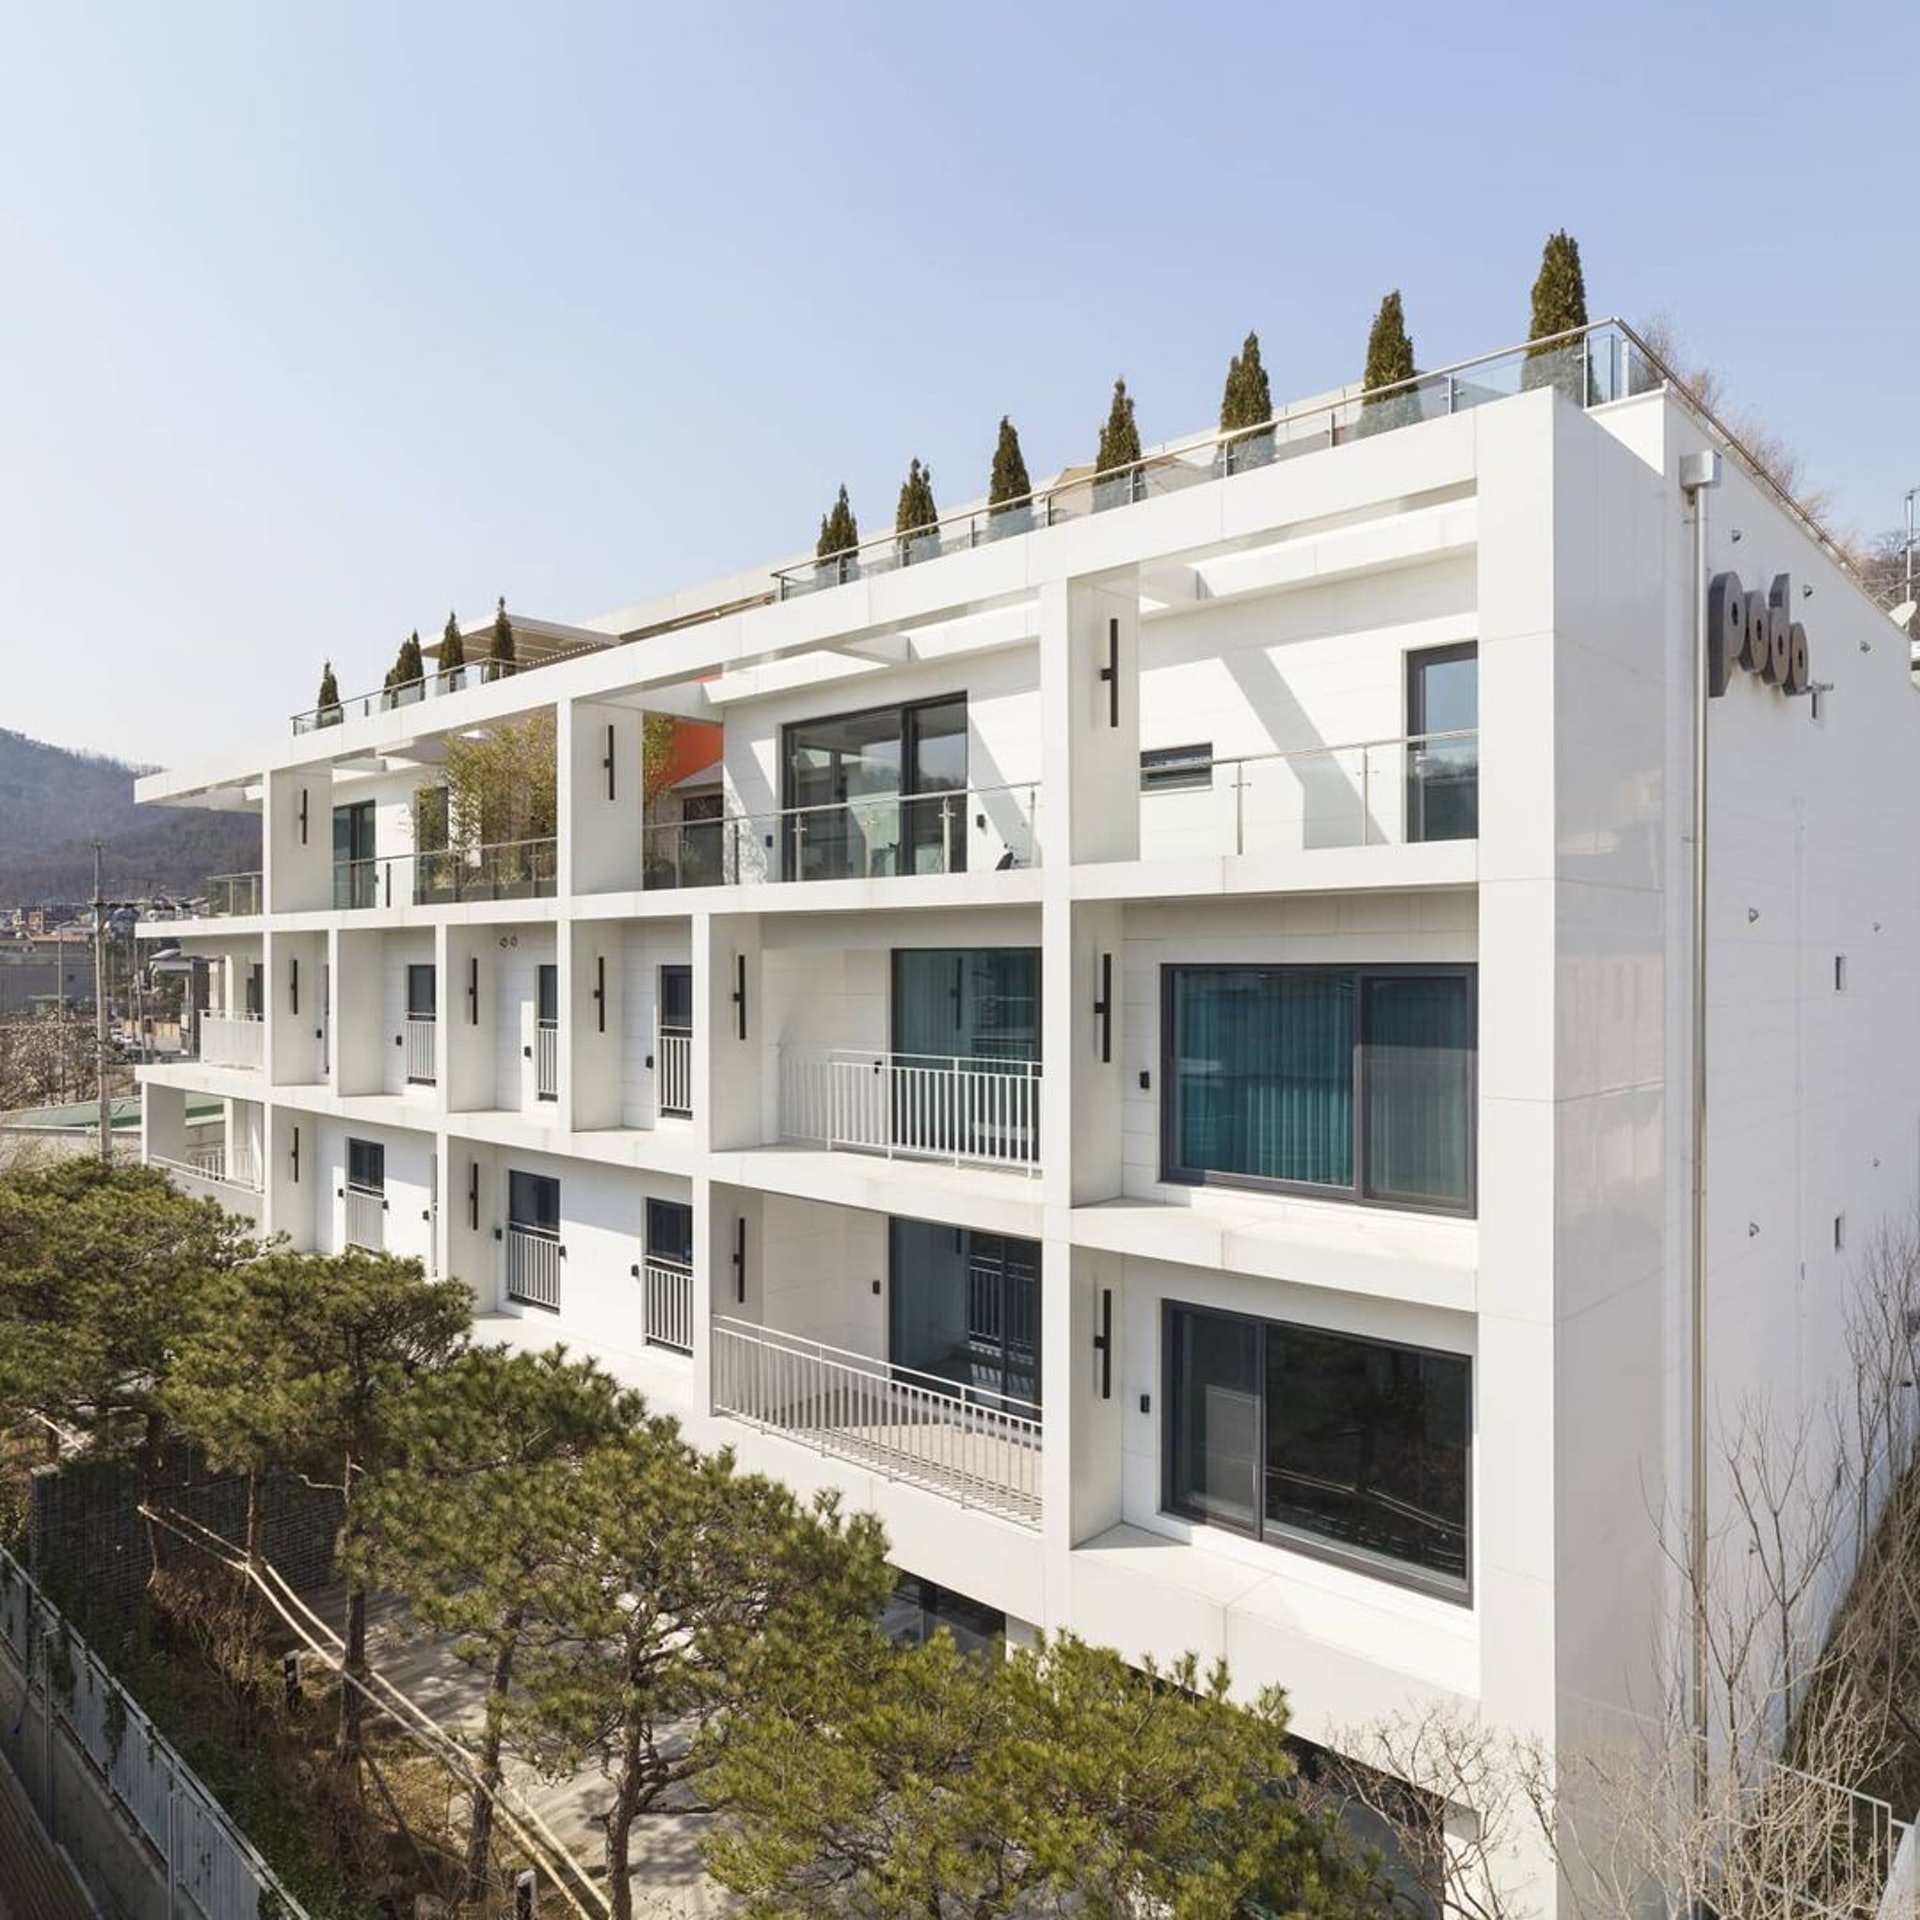 Căn penthouse của nam tài tử 'Hạ cánh nơi anh' nằm ở tầng 4 một khu biệt thự cao cấp tại Achiul, Guri, tỉnh Gyeonggi. Căn hộ có diện tích rộng rãi, lên đến 242,45m².